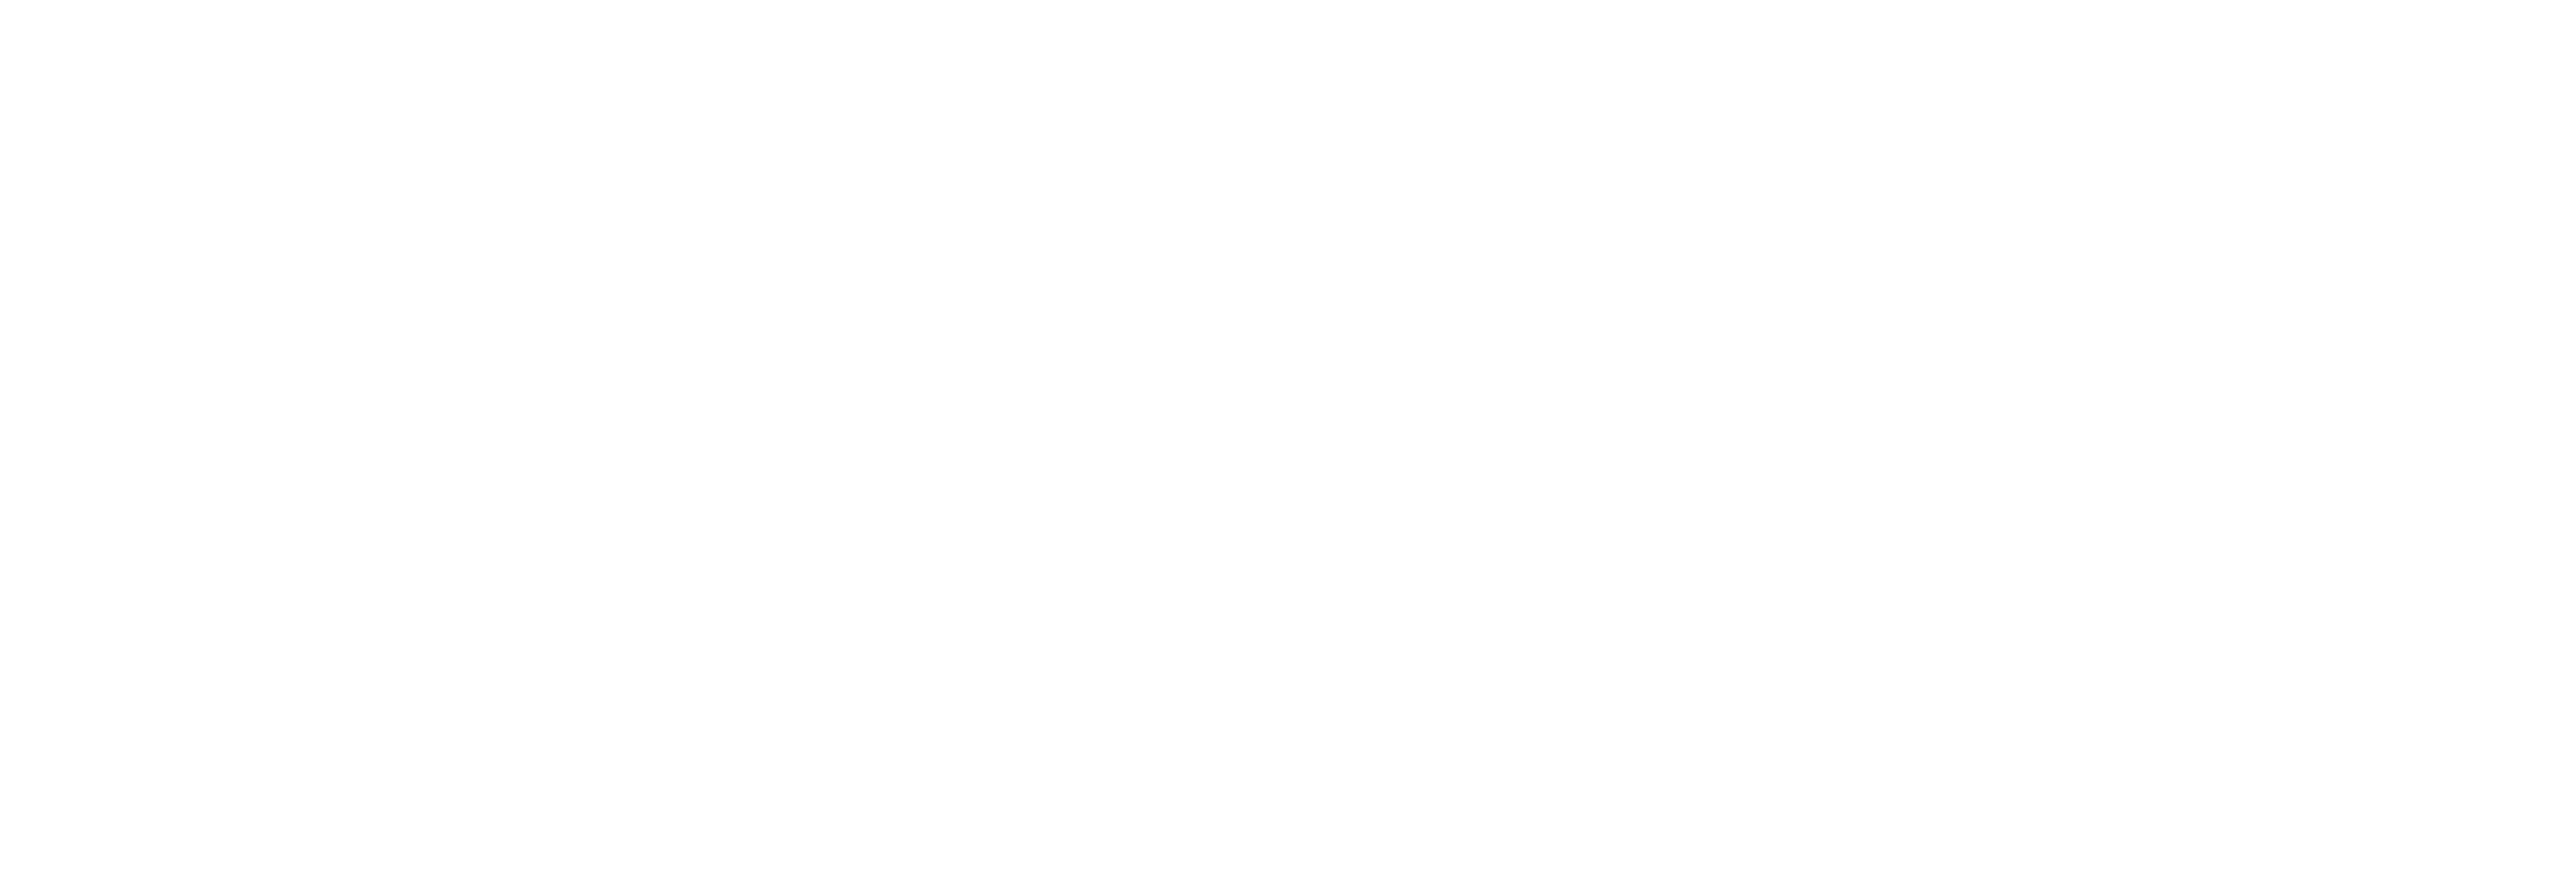 AniCura Clinique Vétérinaire De Molenhoek à Ninove logo